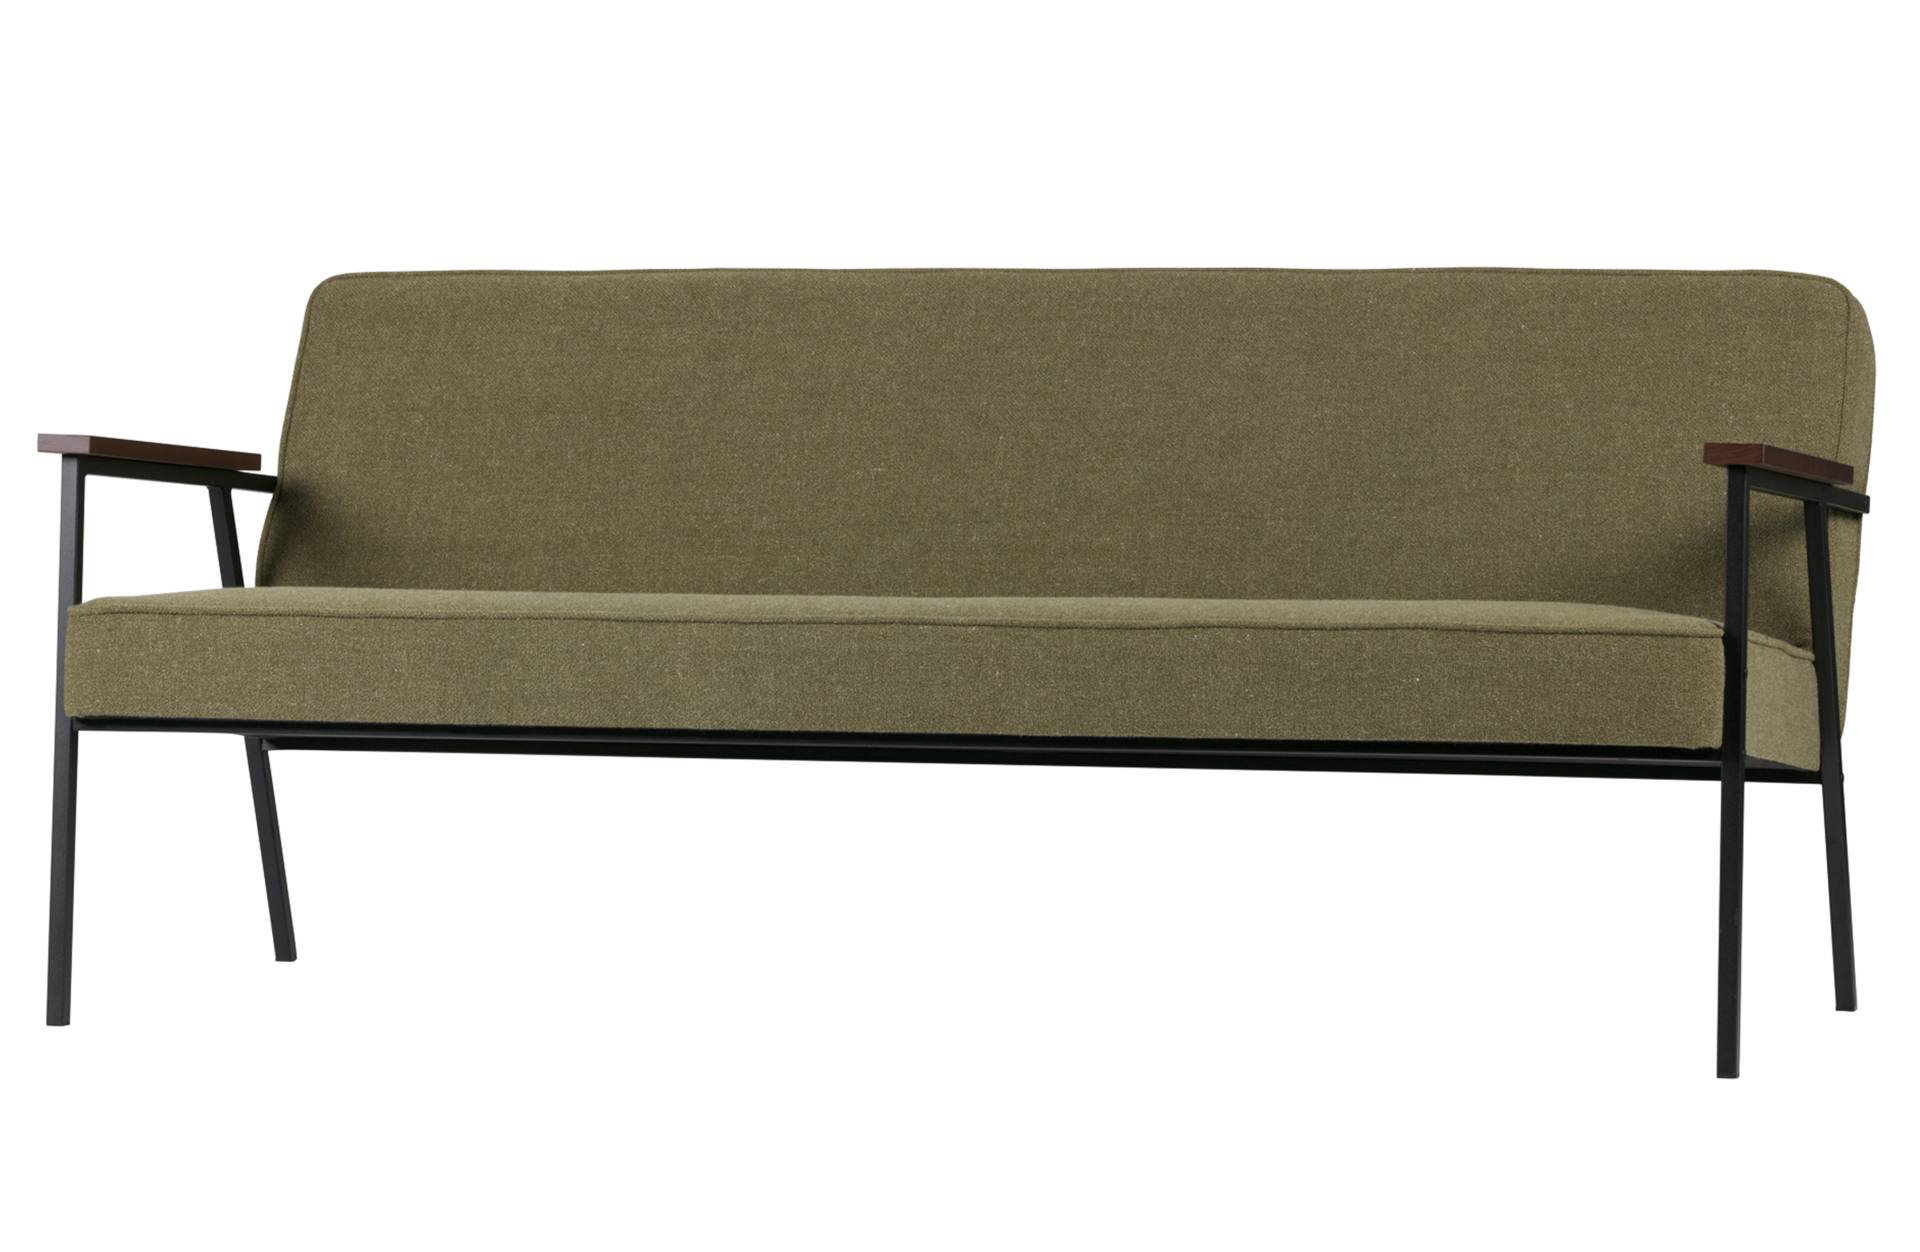 Das 2-Sitzer Sofa Elizabeth überzeugt mit seinem Retro Design. Gefertigt wurde aus einem Stoff Bezug, welcher einen Olive Grünen Farbton besitzt. Das Gestell ist aus Metall und ist schwarz.